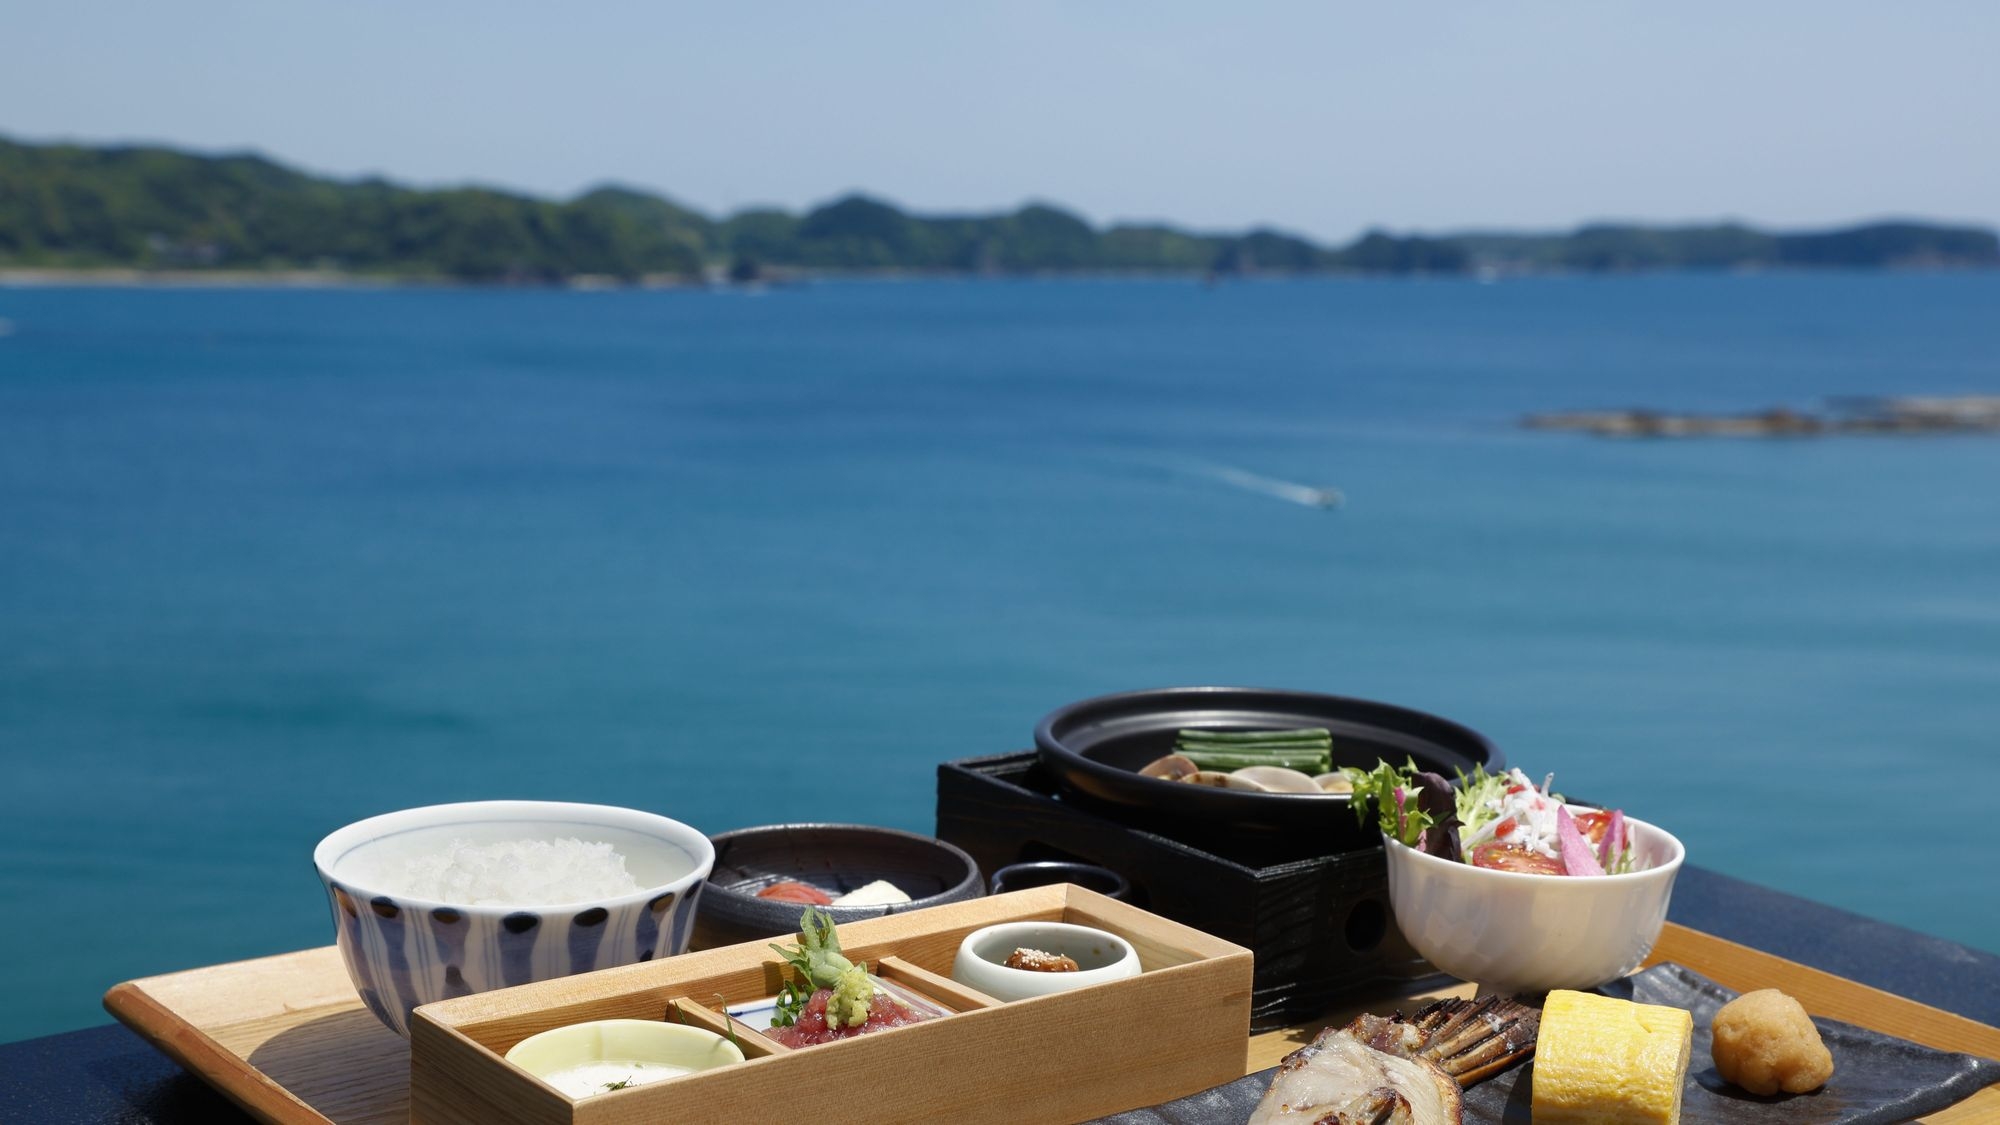 「朝食付き」焼きたて出汁巻きと焼魚。勝浦漁港の漁師の朝をテーマにした快活和朝食御膳